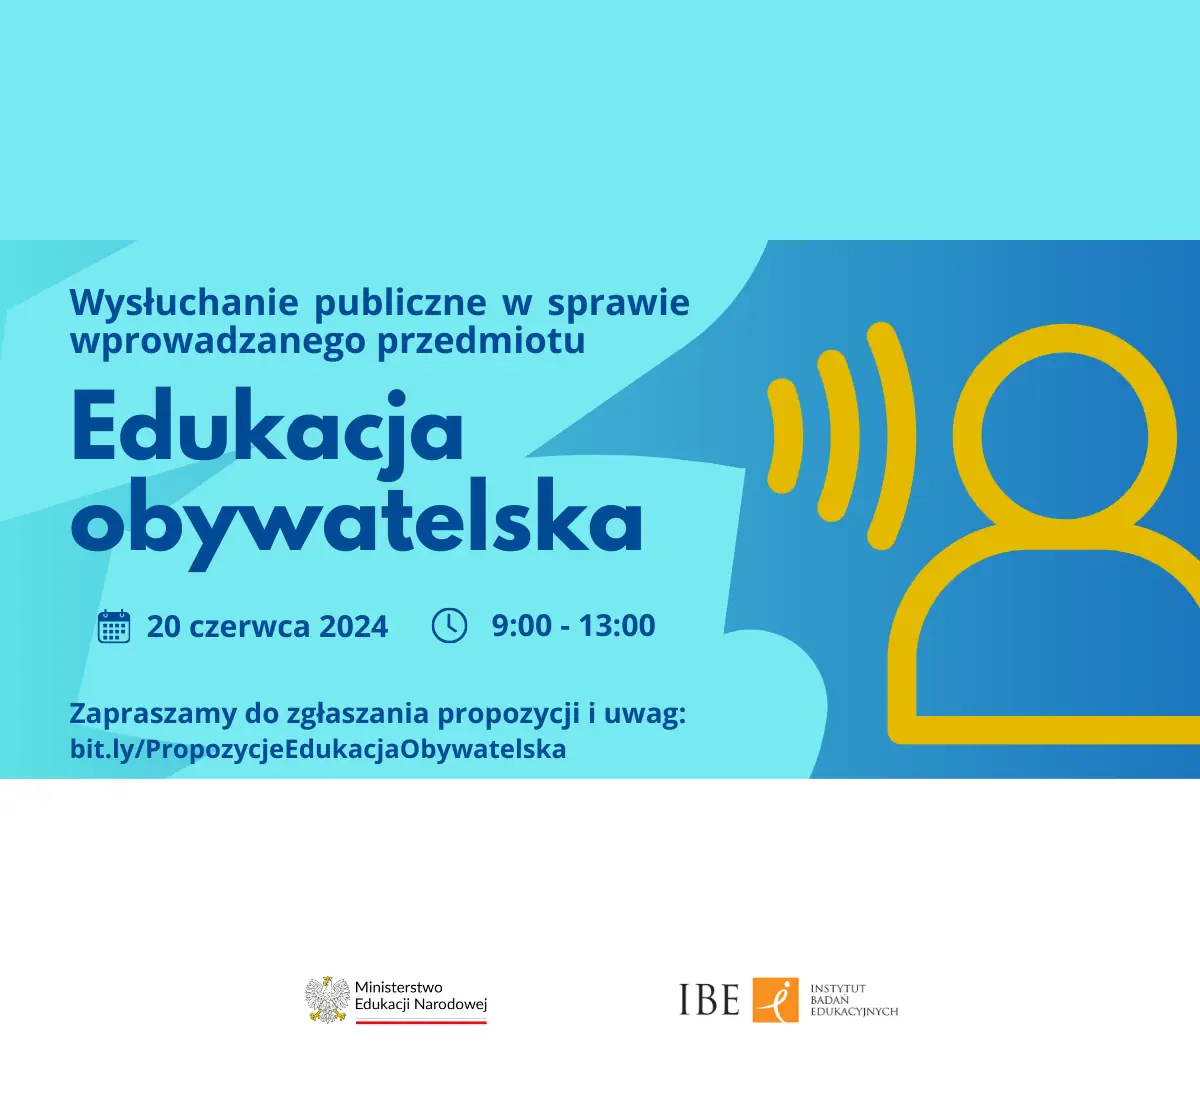 Plakat informacyjny wysłuchania publicznego w sprawie wprowadzanego przedmiotu - edukacja obywatelska.